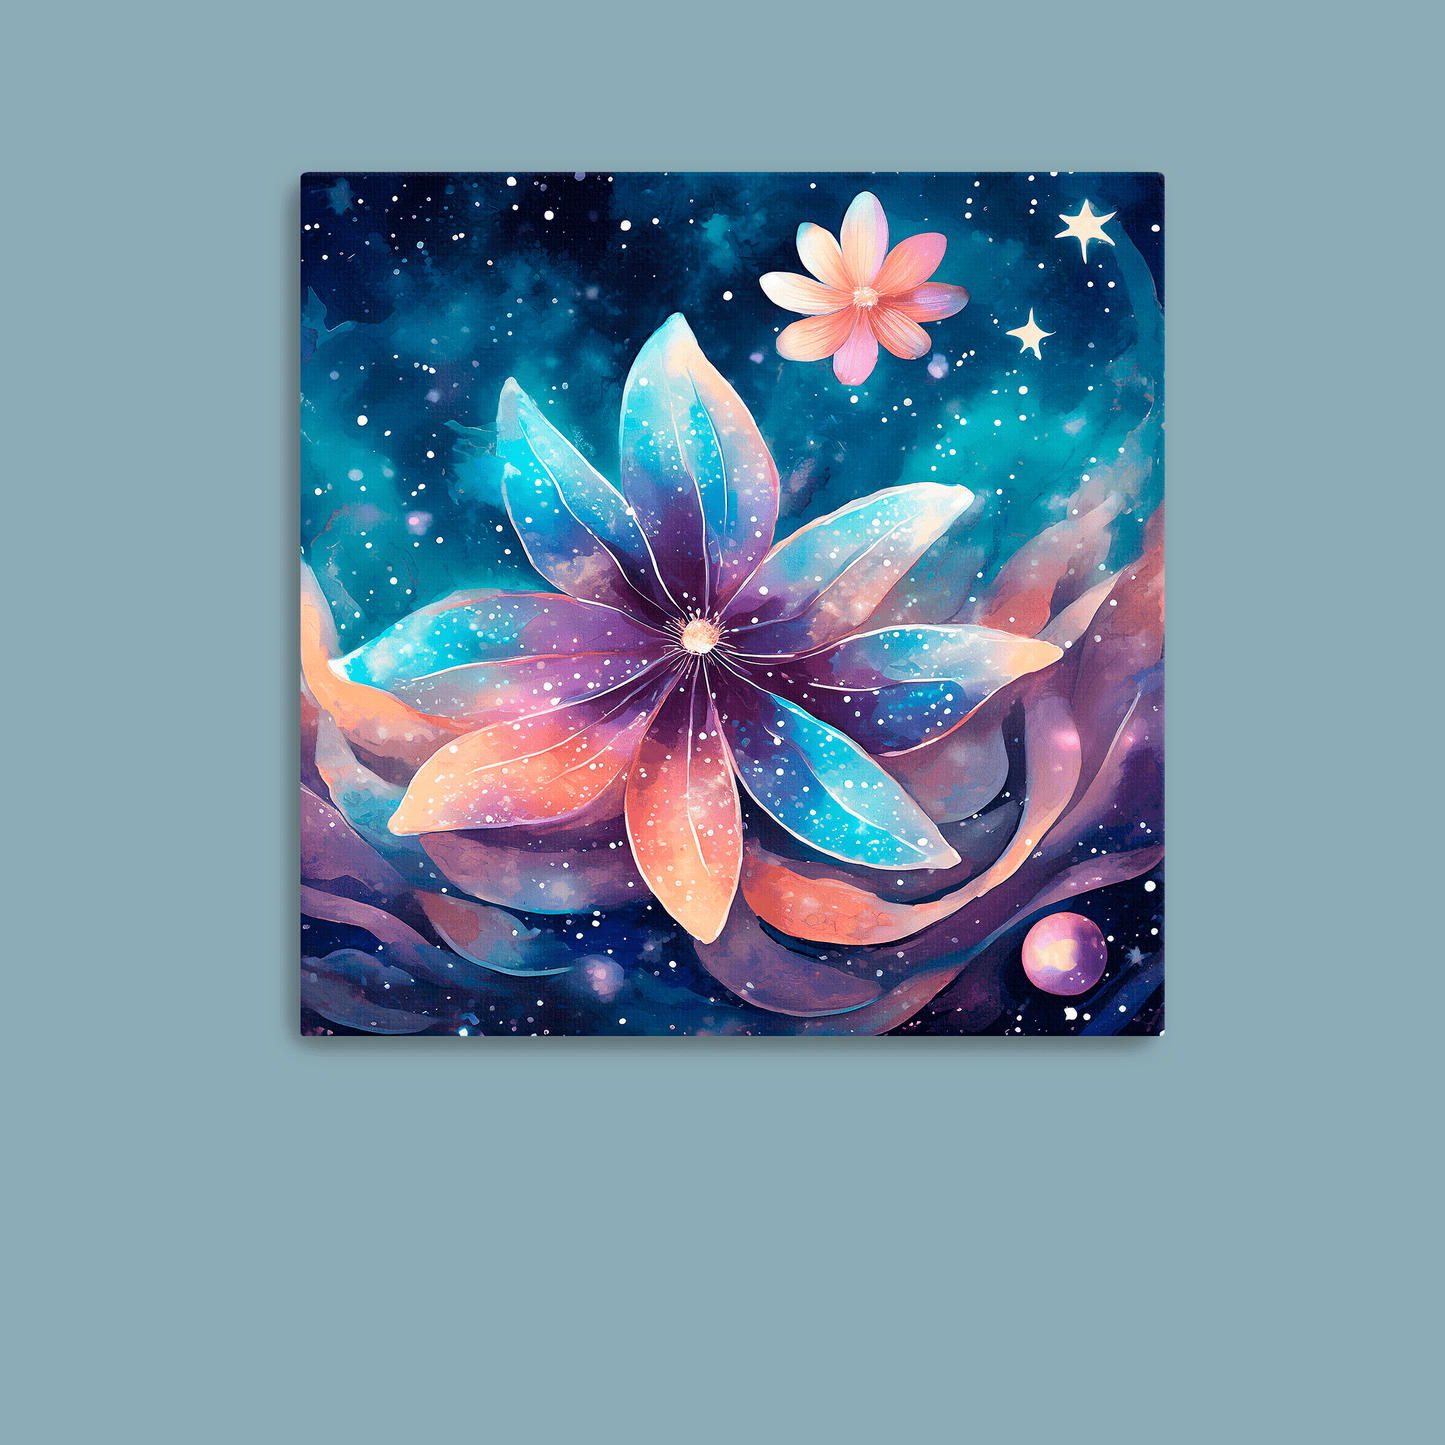 Cosmic Moon Flower - Canvas Wrap - Premium Canvas Wrap